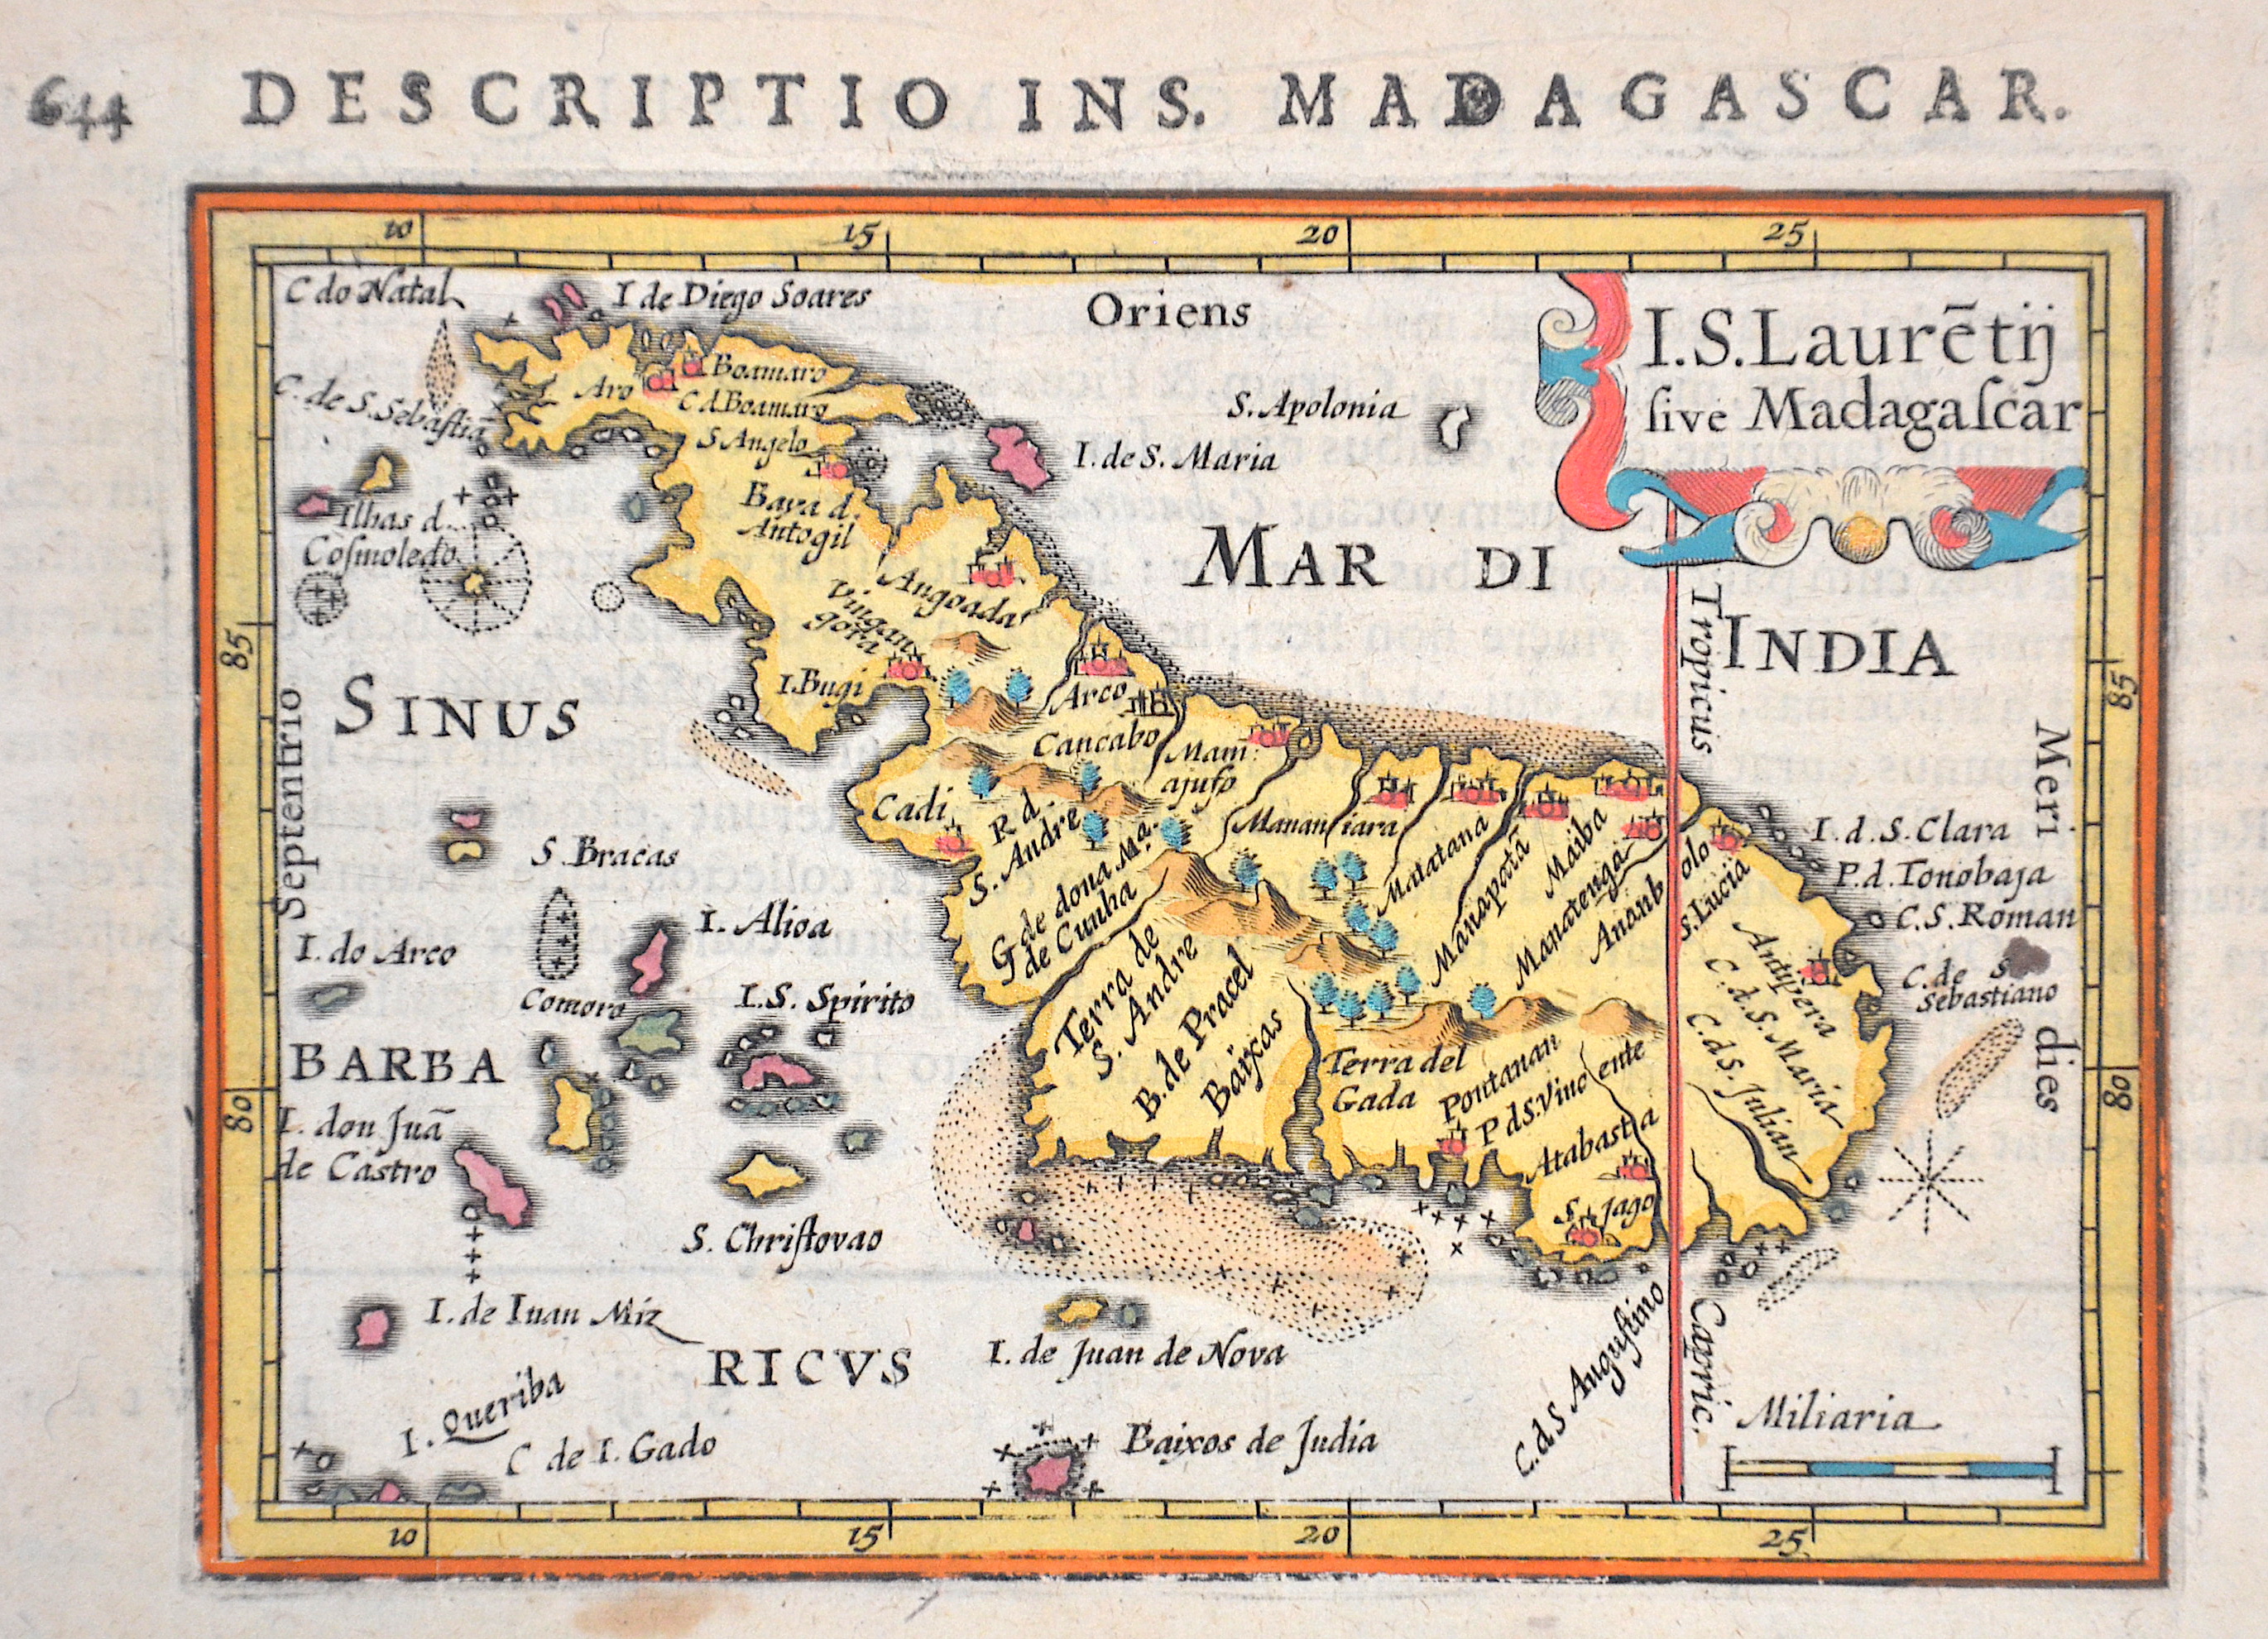 Bertius Petrus 644 Descriptio Ins. Madagascar.